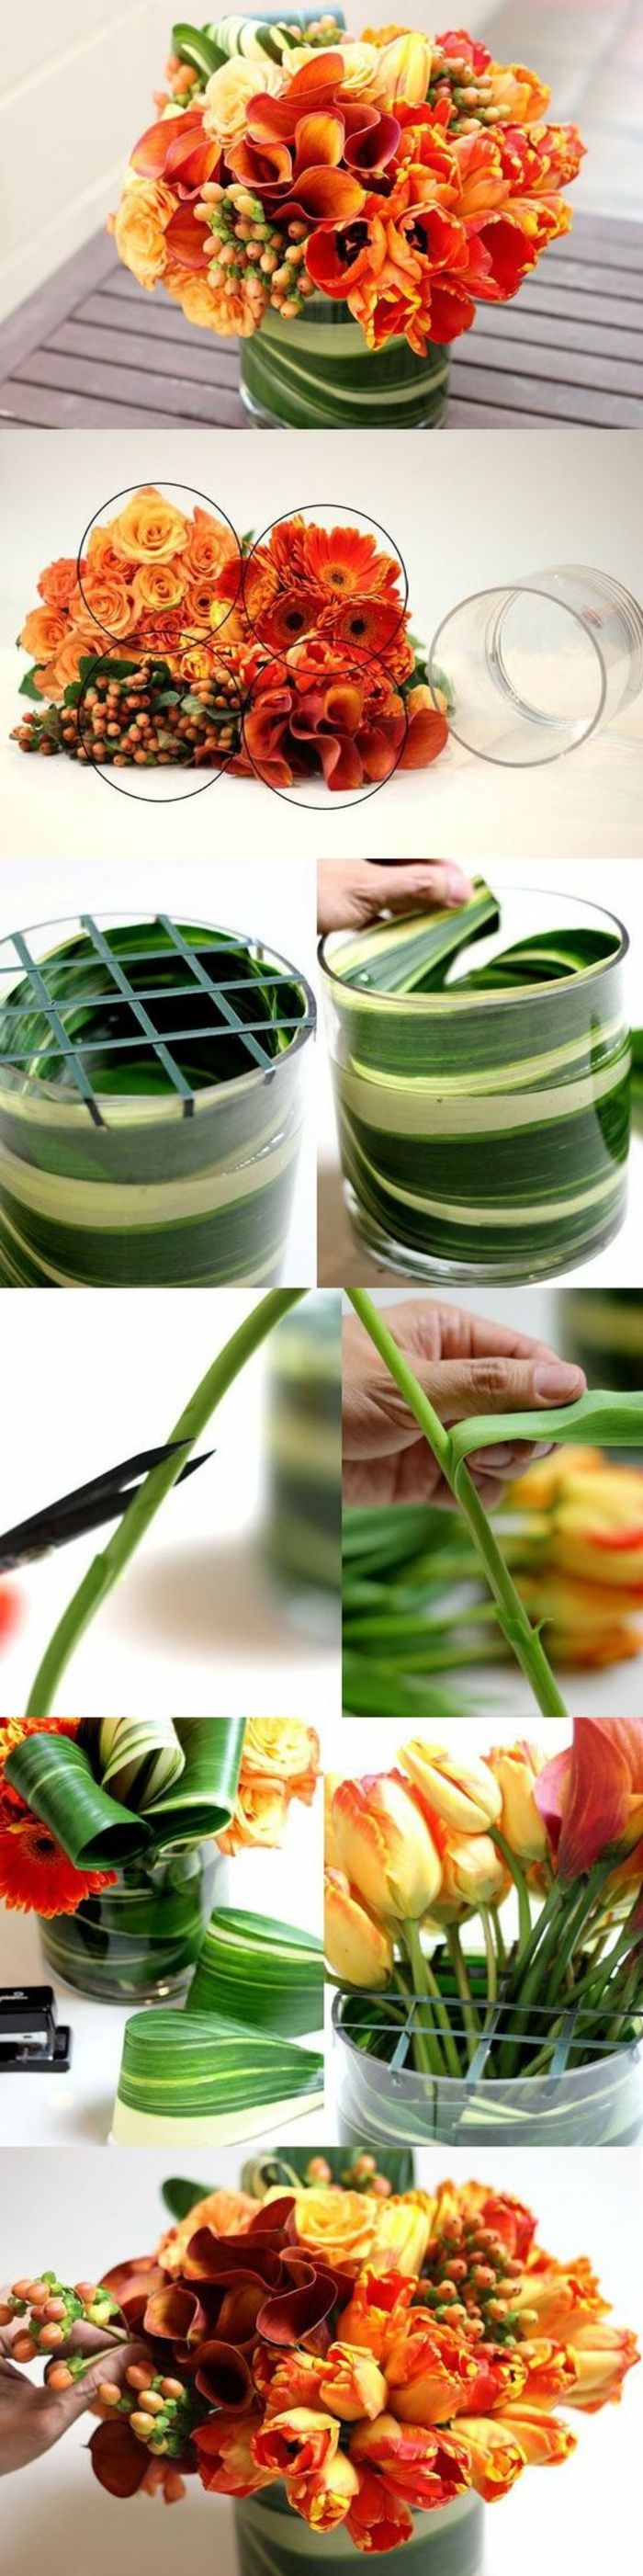 naredite dekoracijo mize, okrasite stekleno vazo z oranžnimi rožami in zelenimi listi